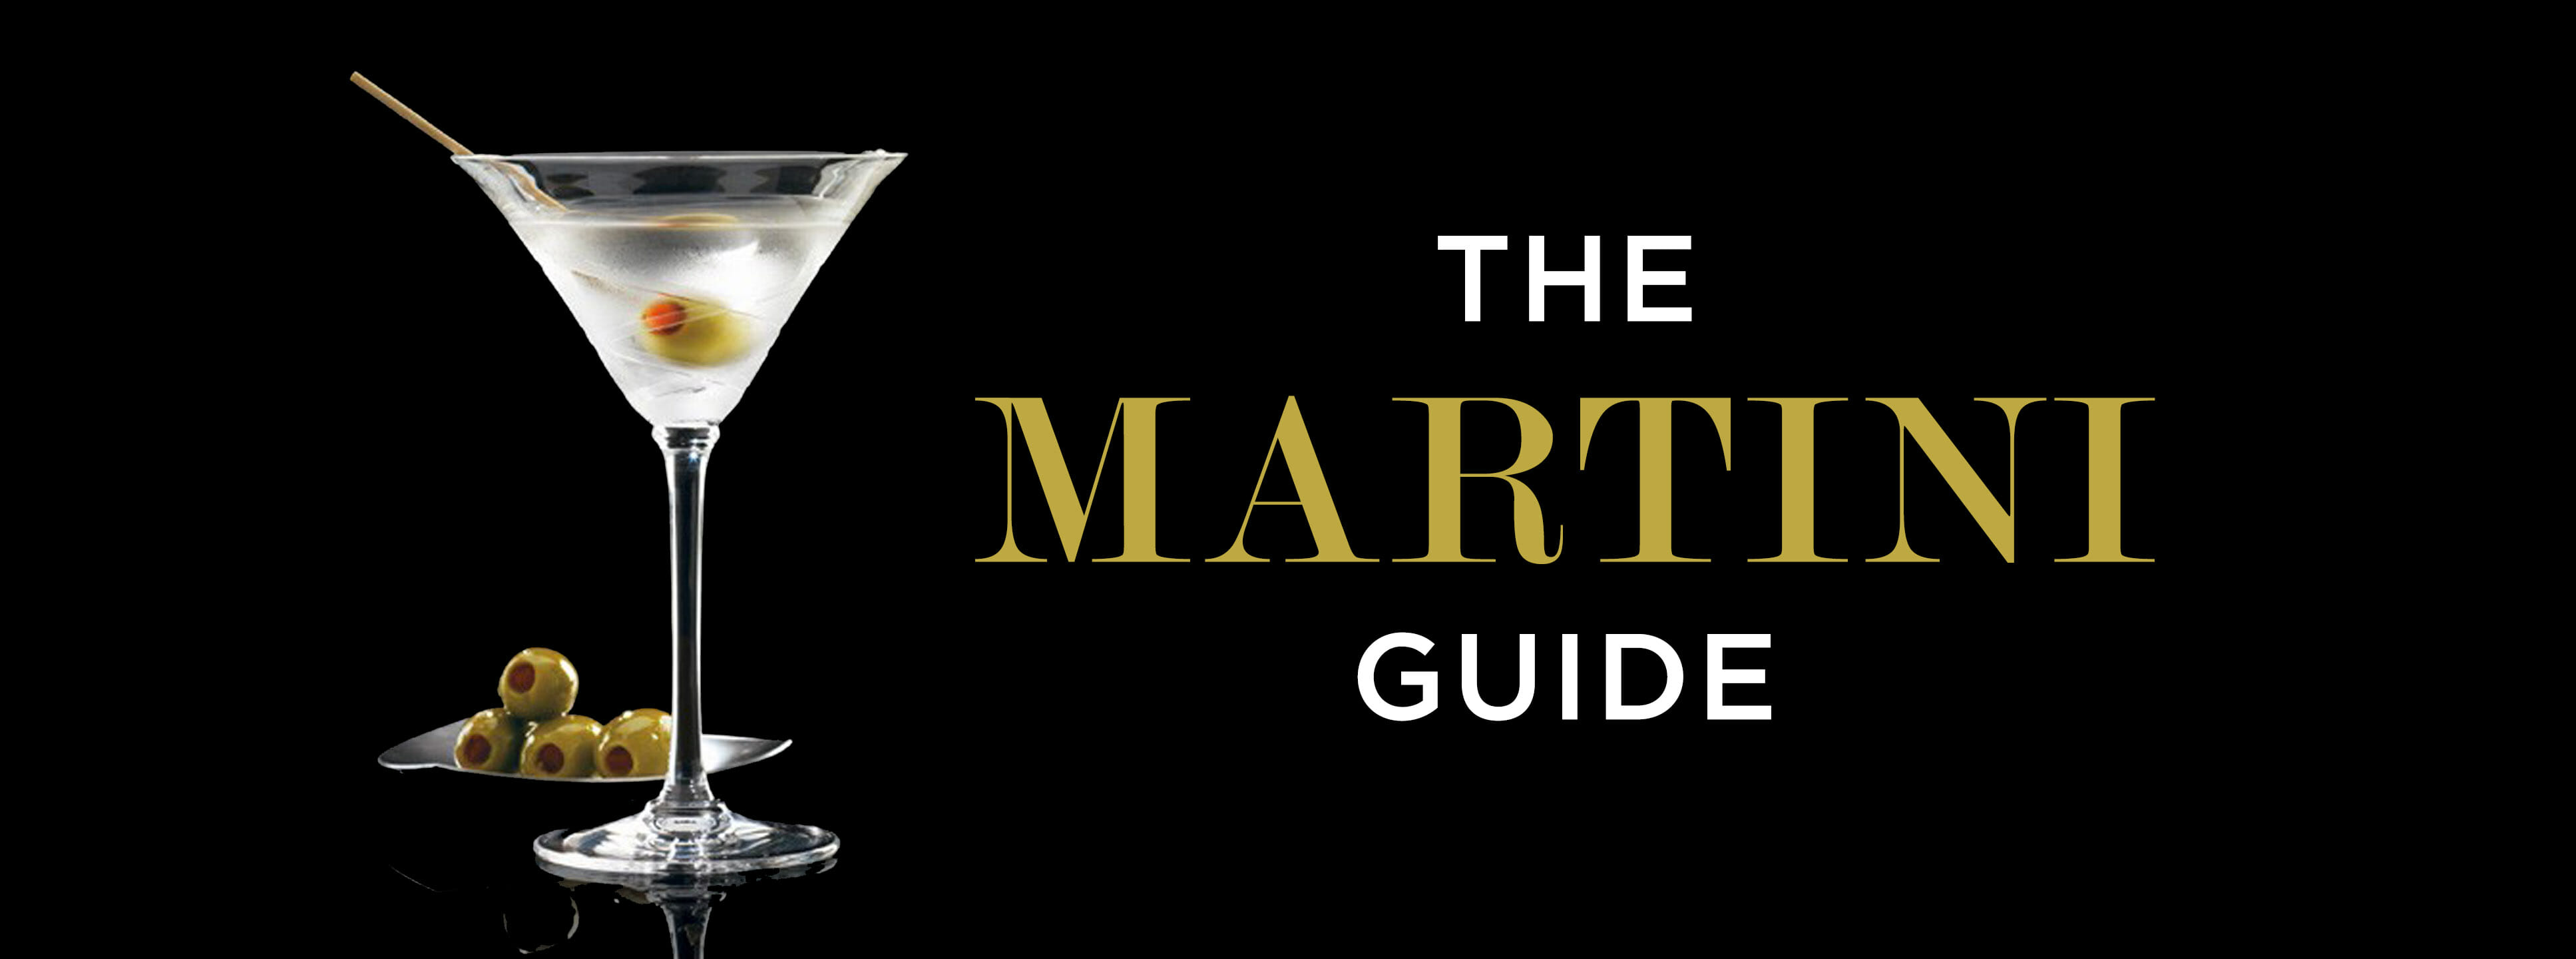 the martini guide